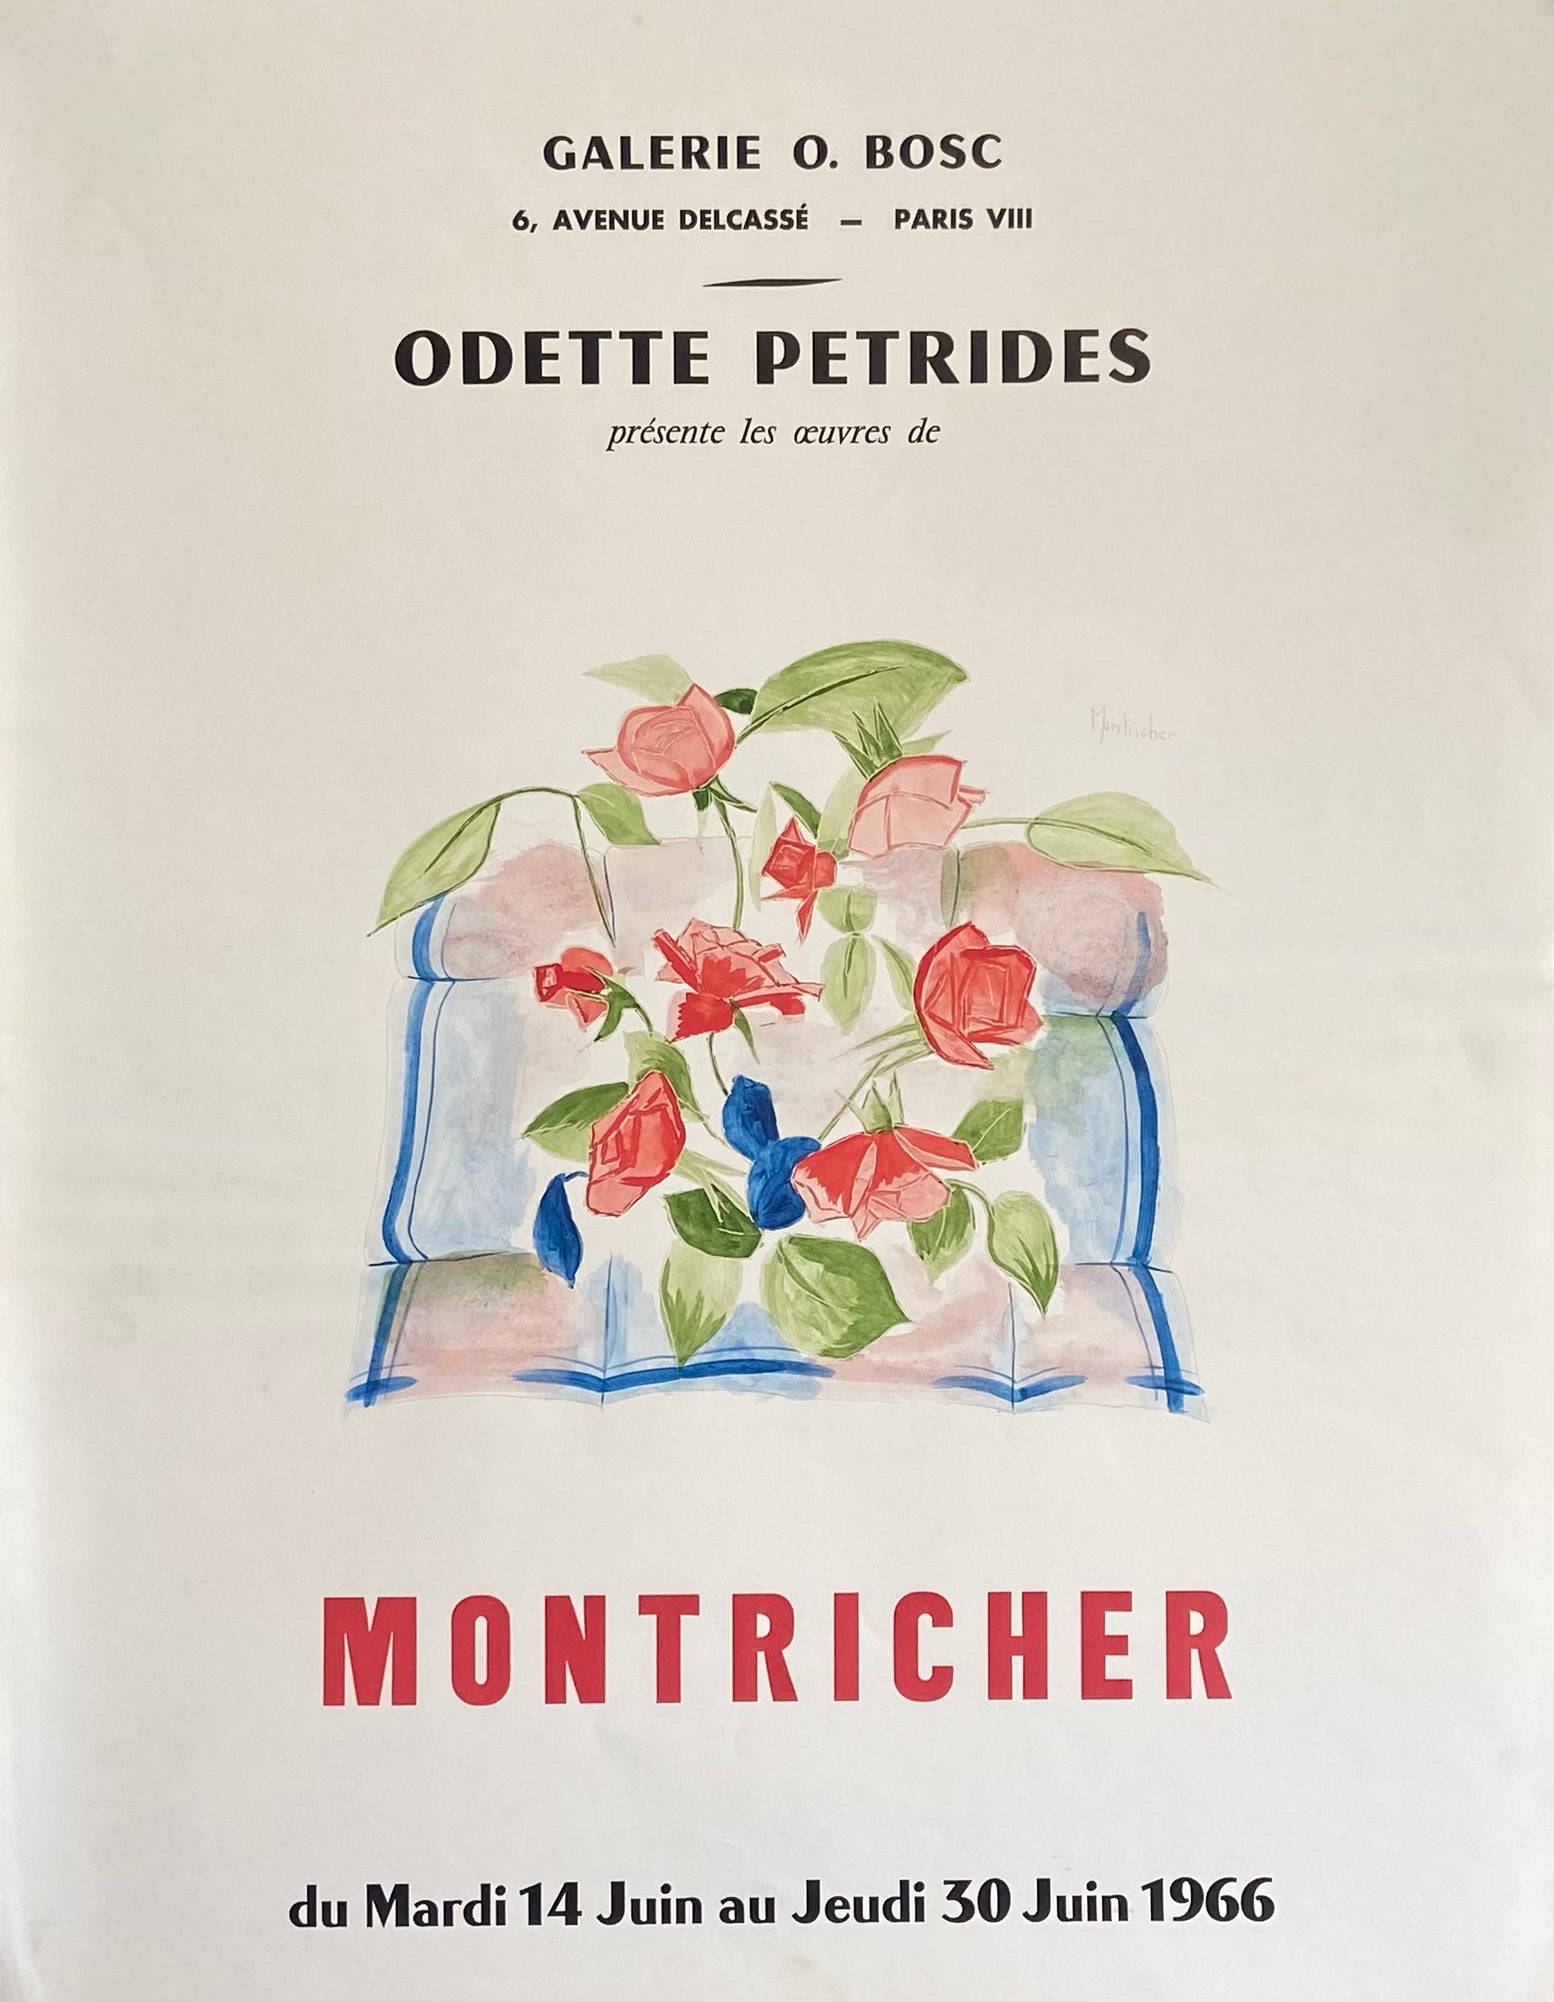 Affiche galerie O. Bosc    Par Montricher, 1966